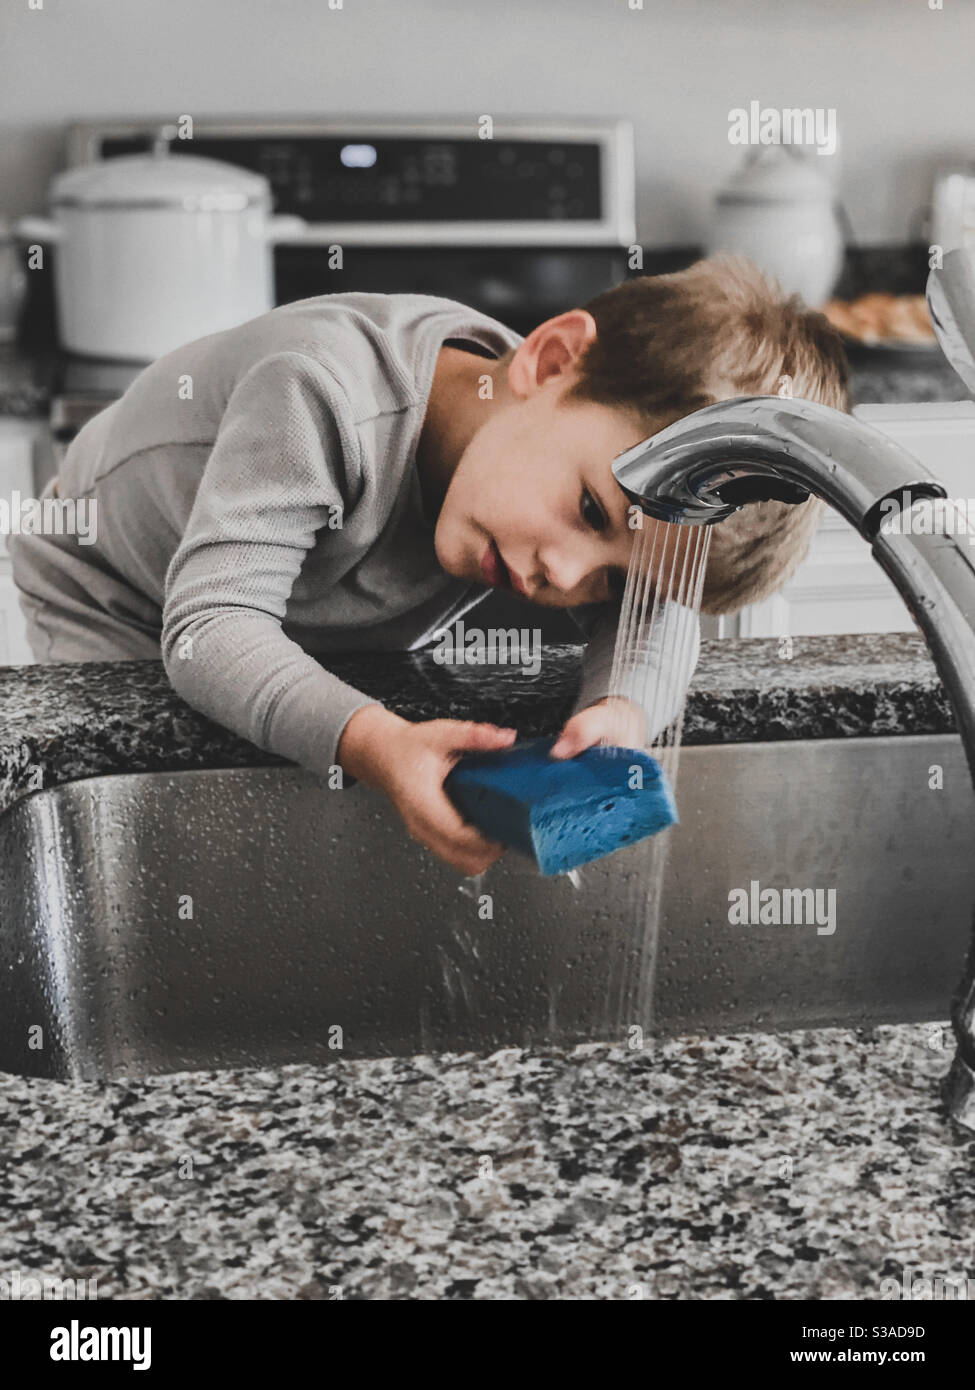 Junge versucht, Geschirr zu waschen Stockfoto